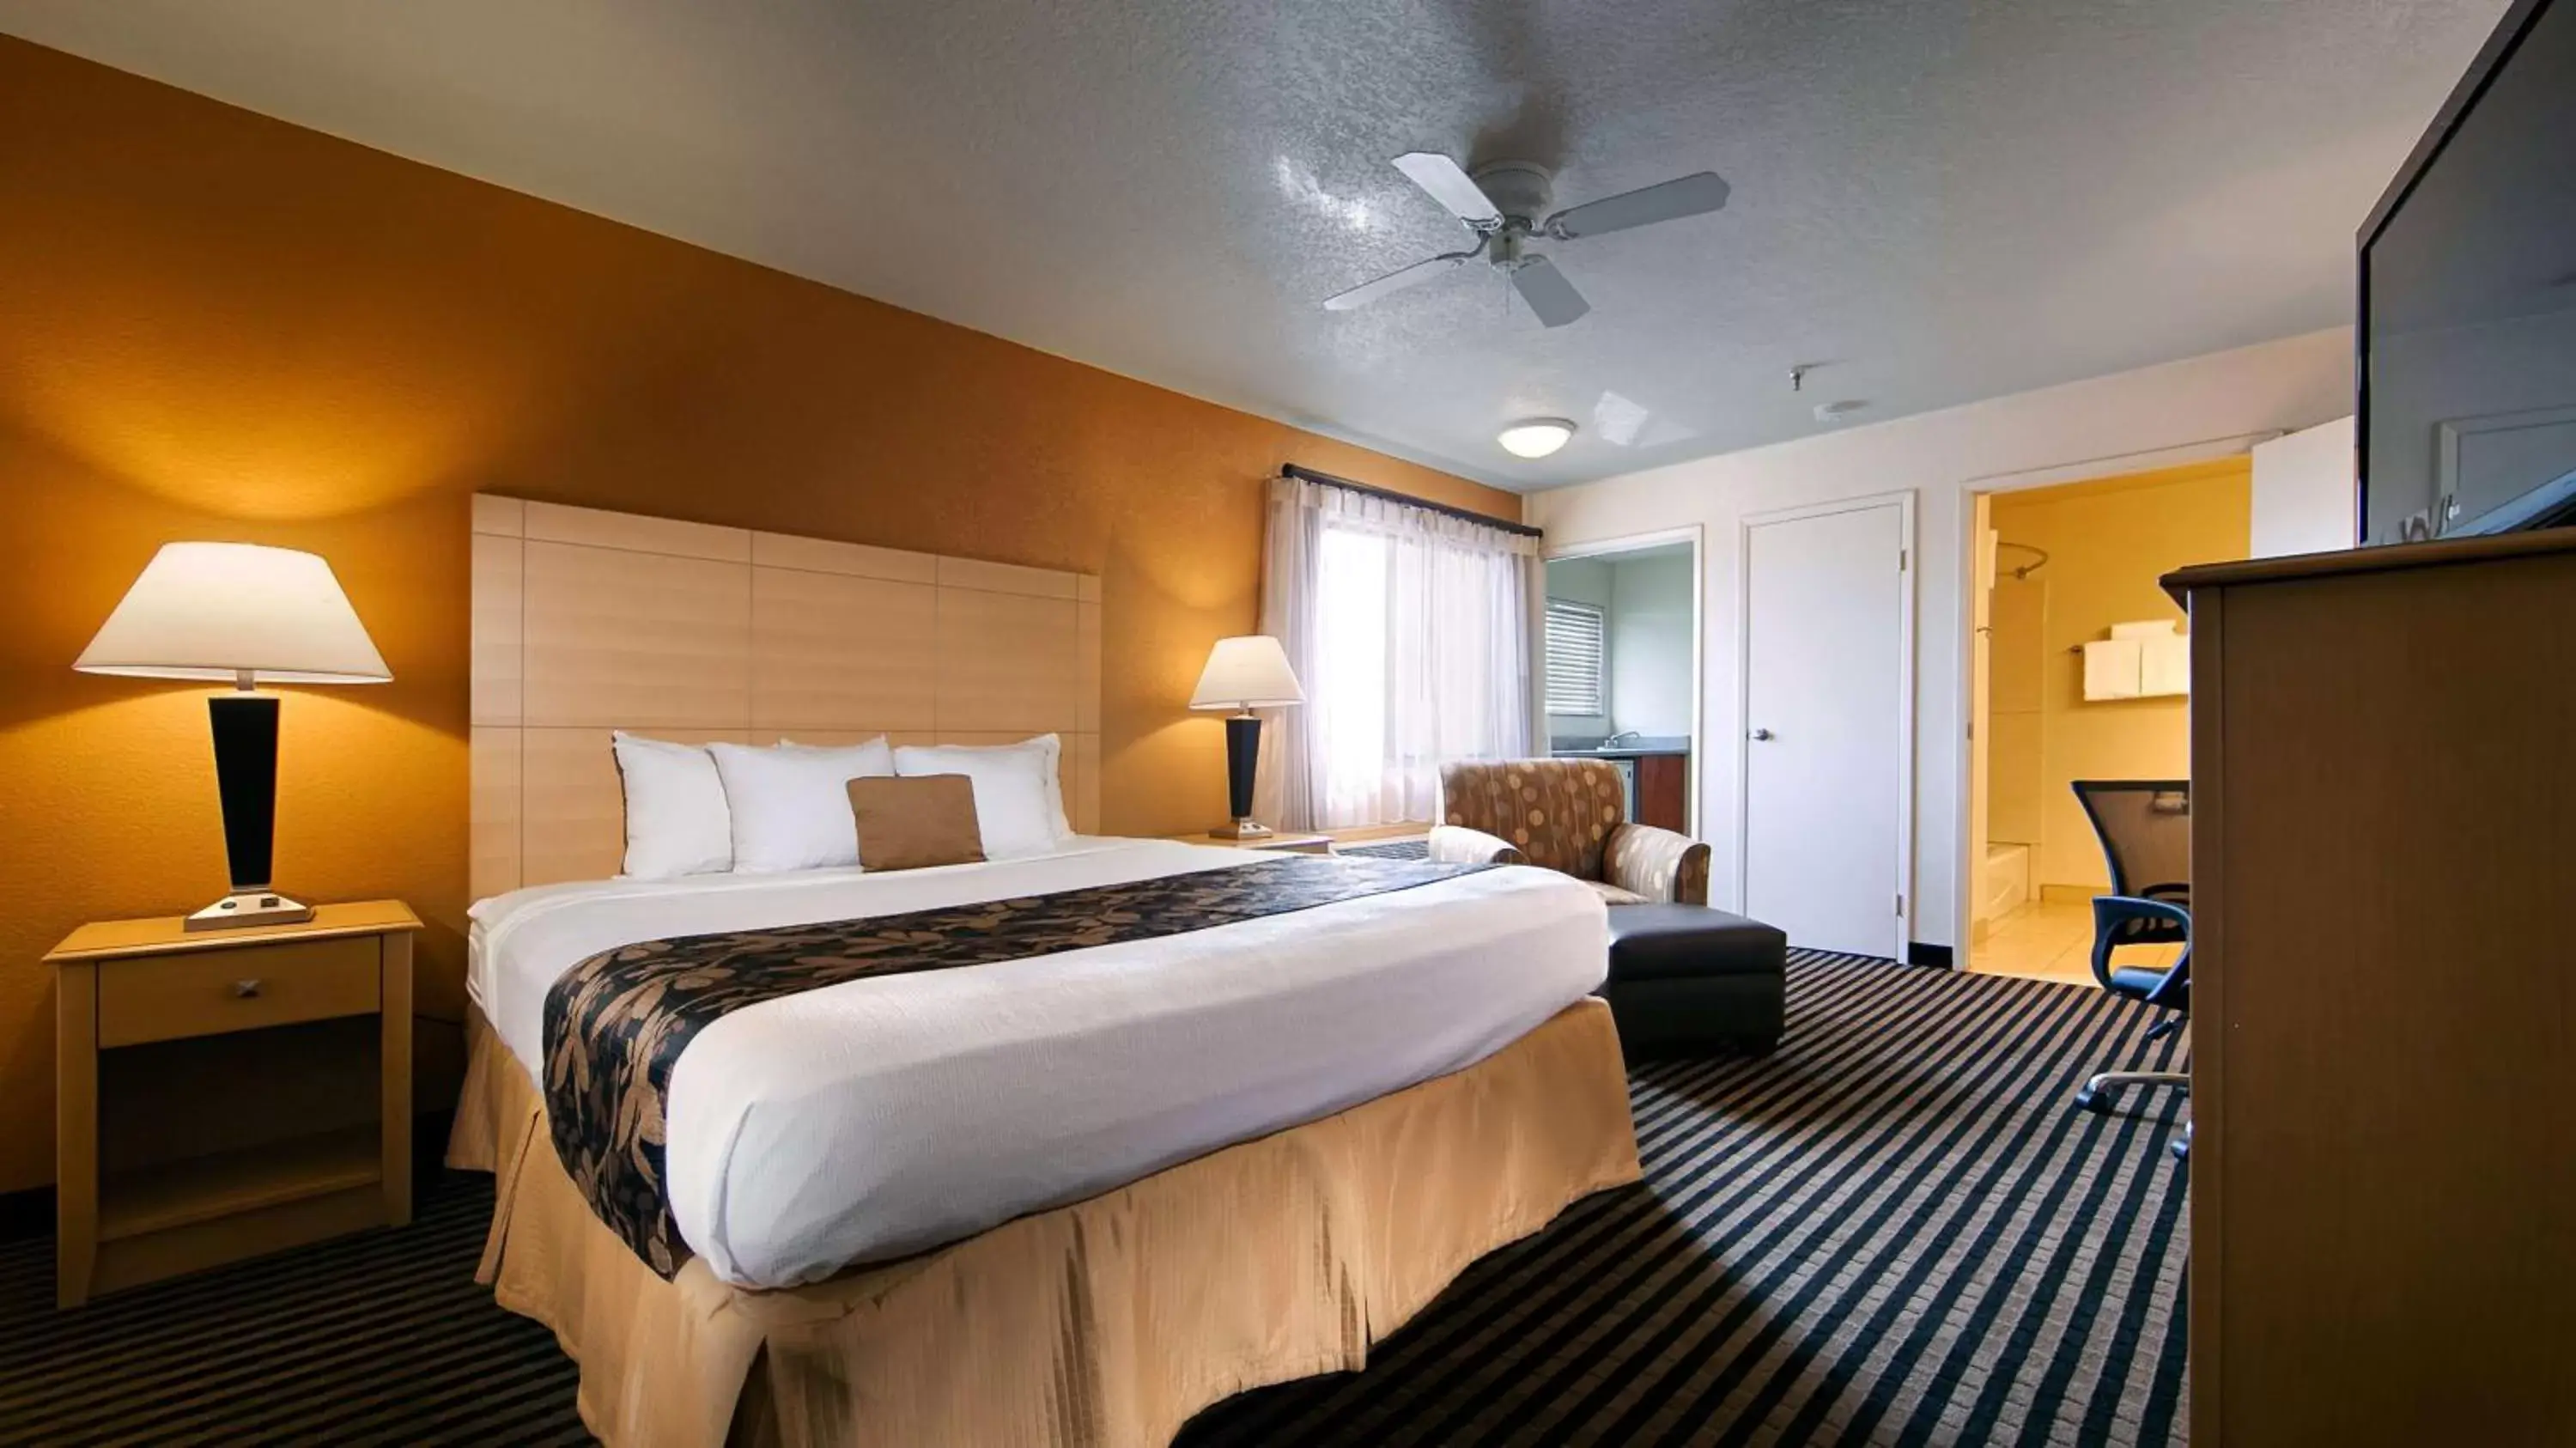 Bedroom, Bed in Best Western Plus Executive Inn & Suites